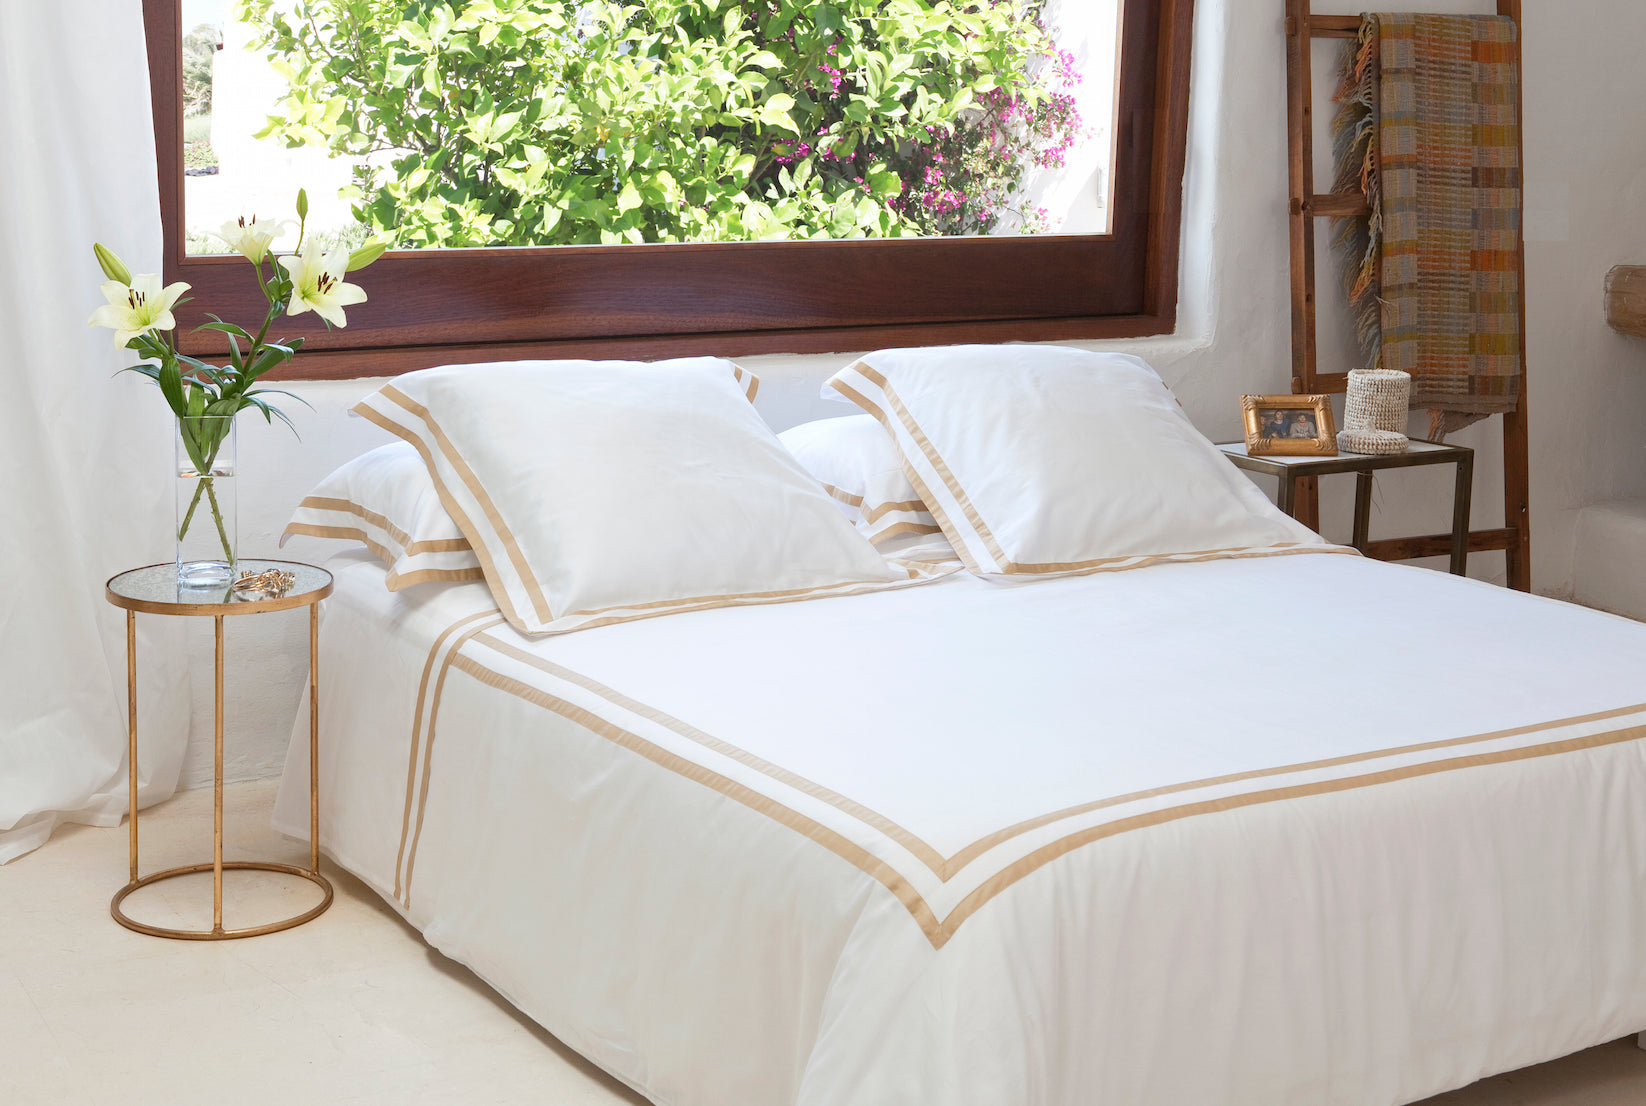 Tailored Euro Pillowcase White & Honey Formentera